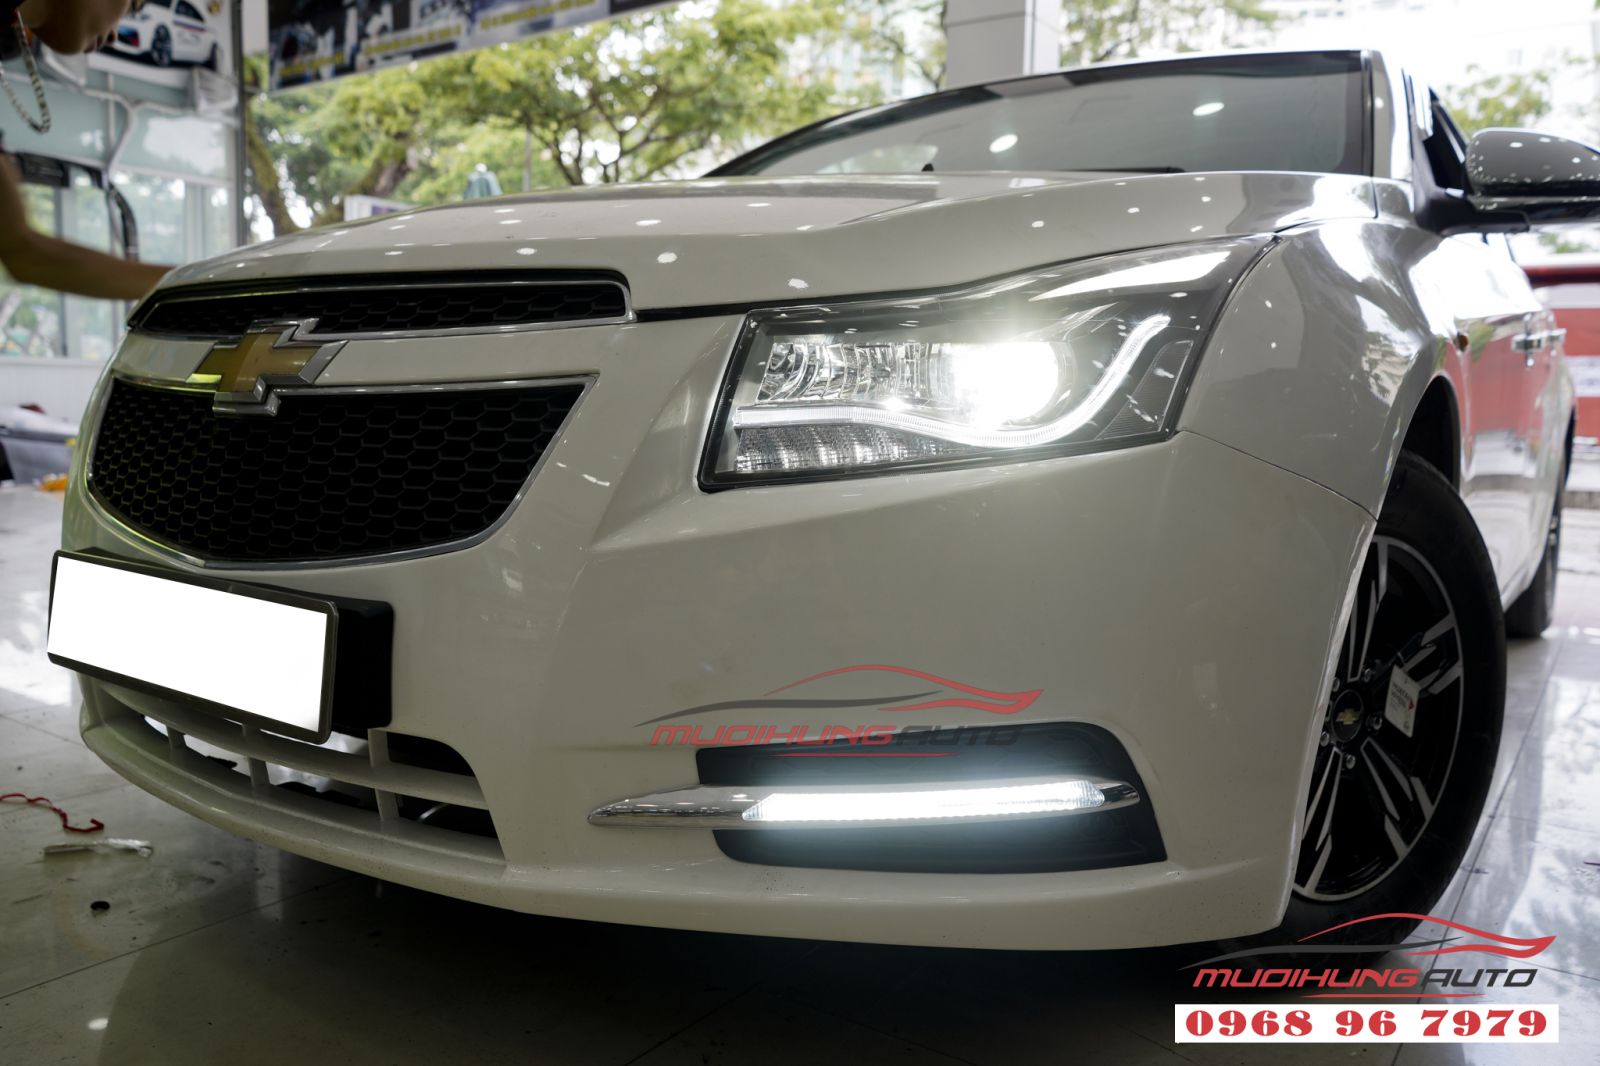 Thay đèn pha nguyên khối và led cản Chevrolet Cruze 2017 tại tphcm 